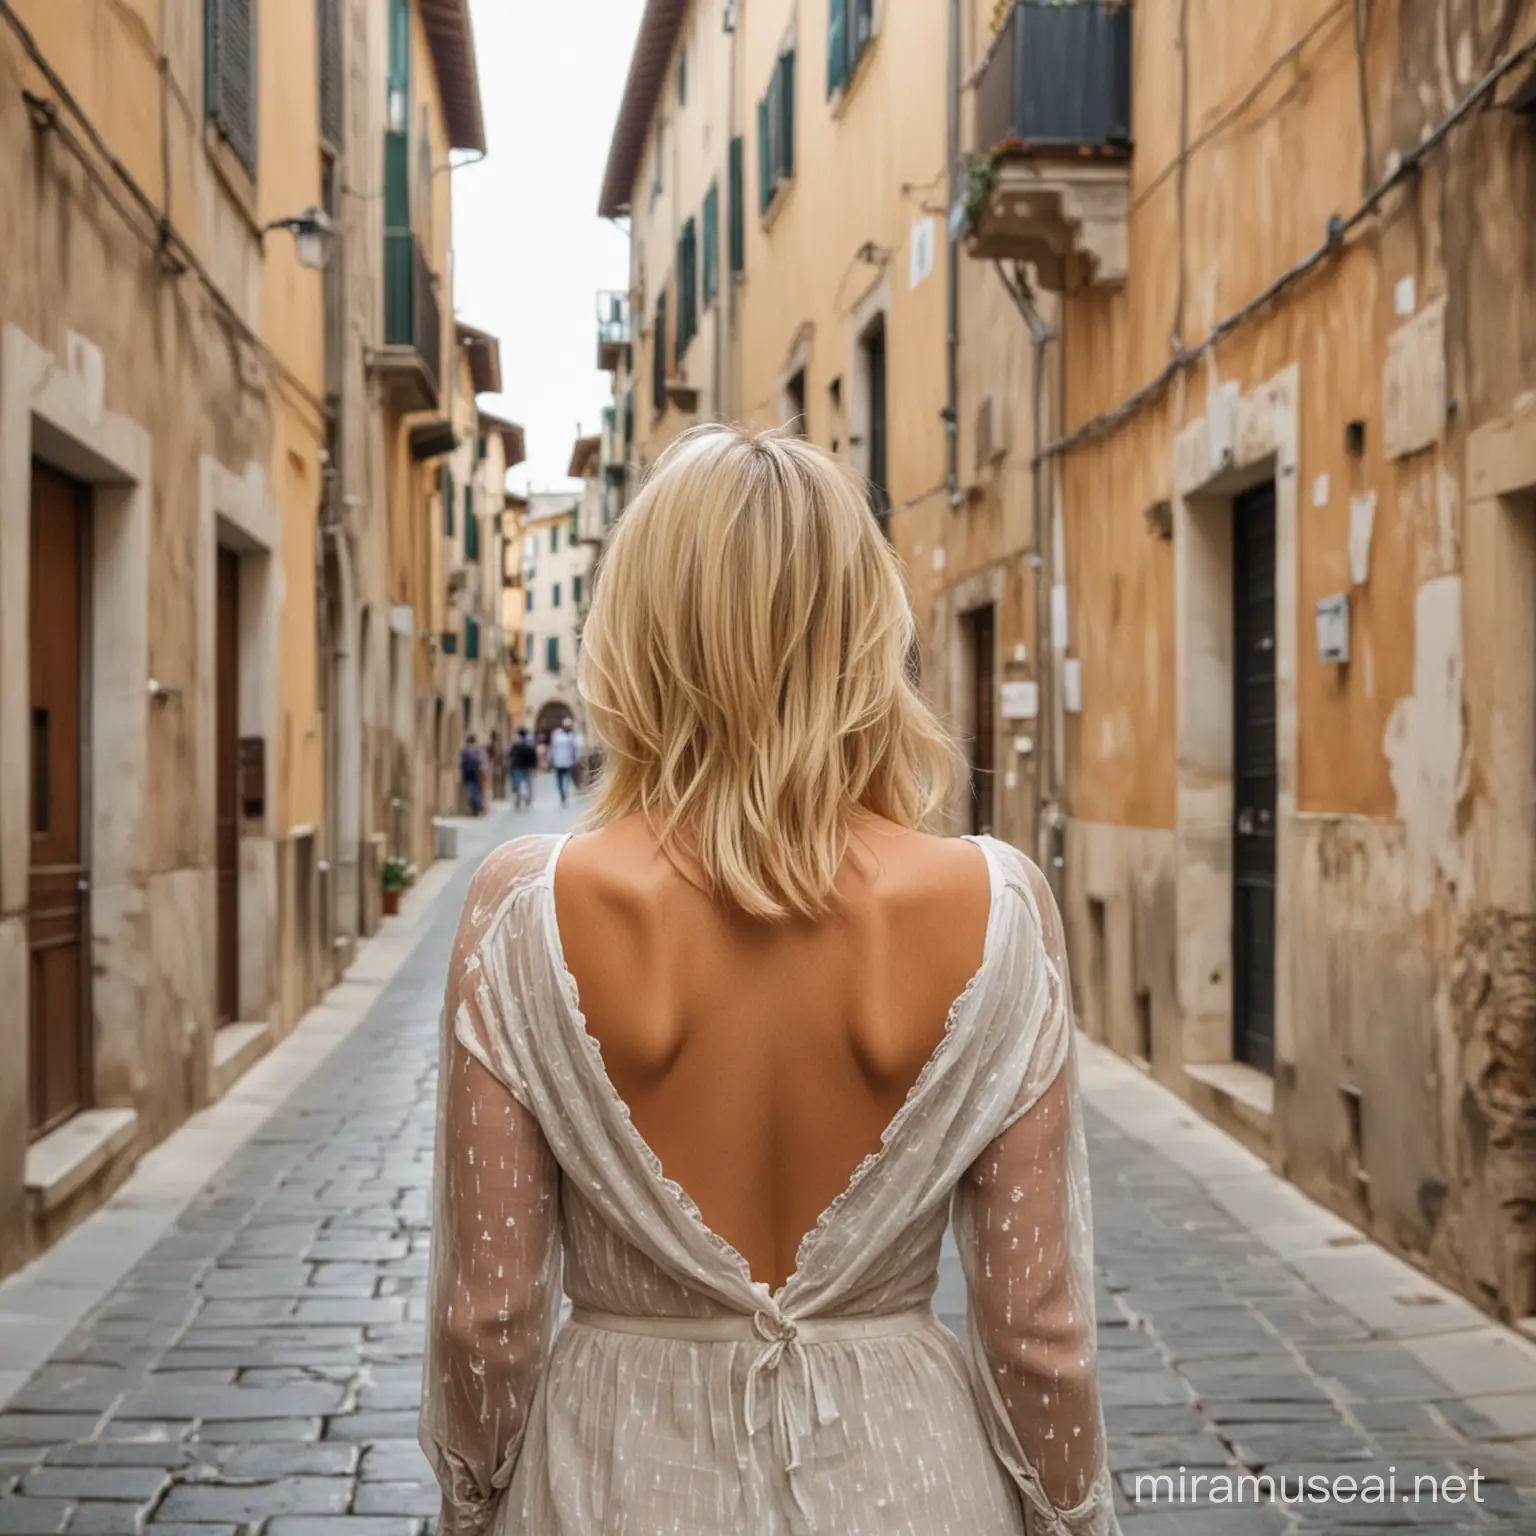 Blonde Woman Standing in Quaint Italian Street Scene